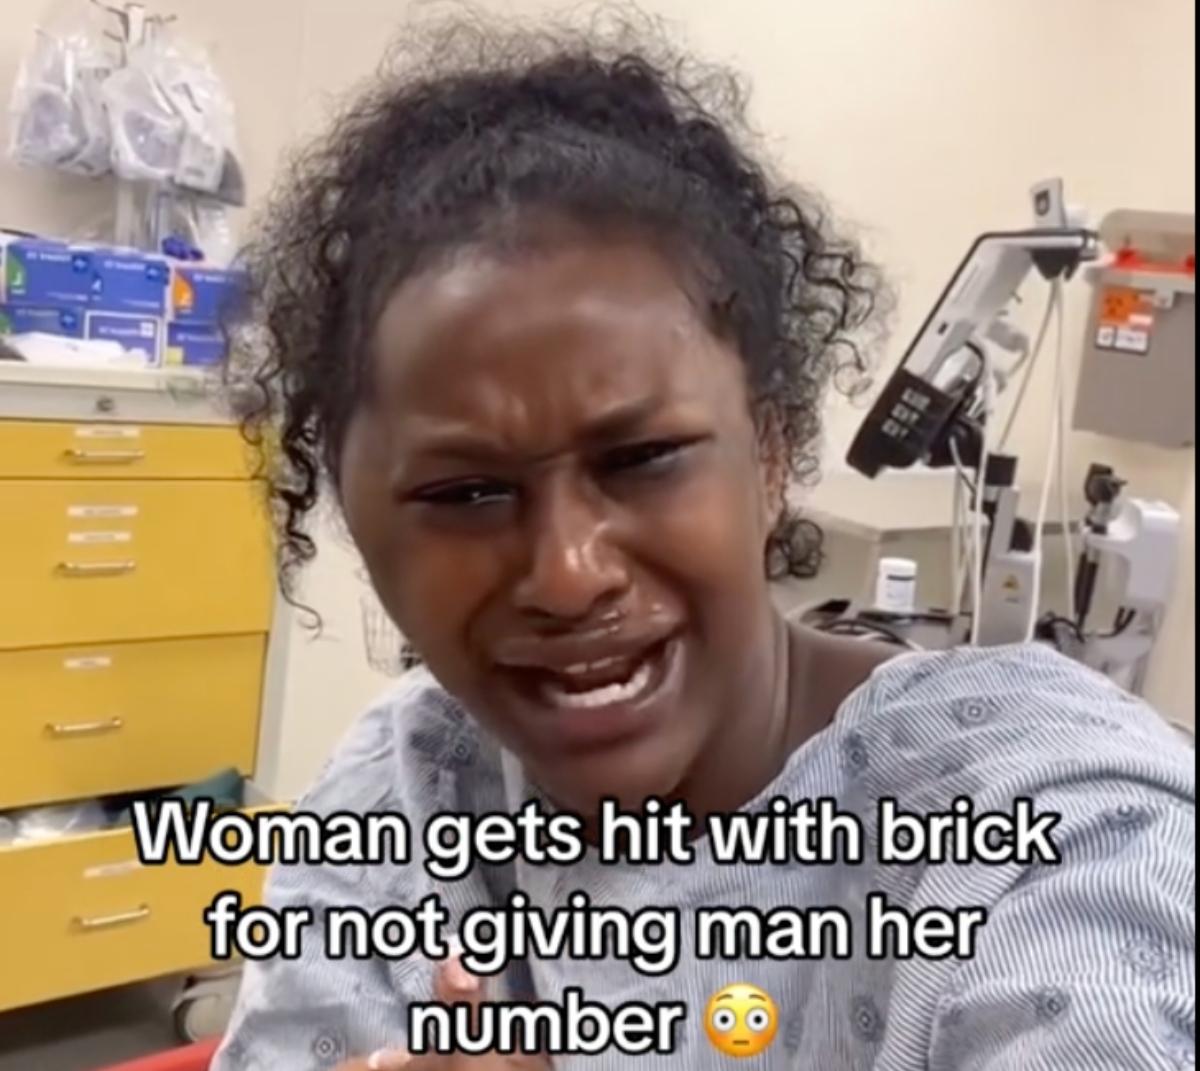 Eine Frau wurde mit einem Ziegelstein geschlagen, nachdem sie einen Mann abgewiesen hatte